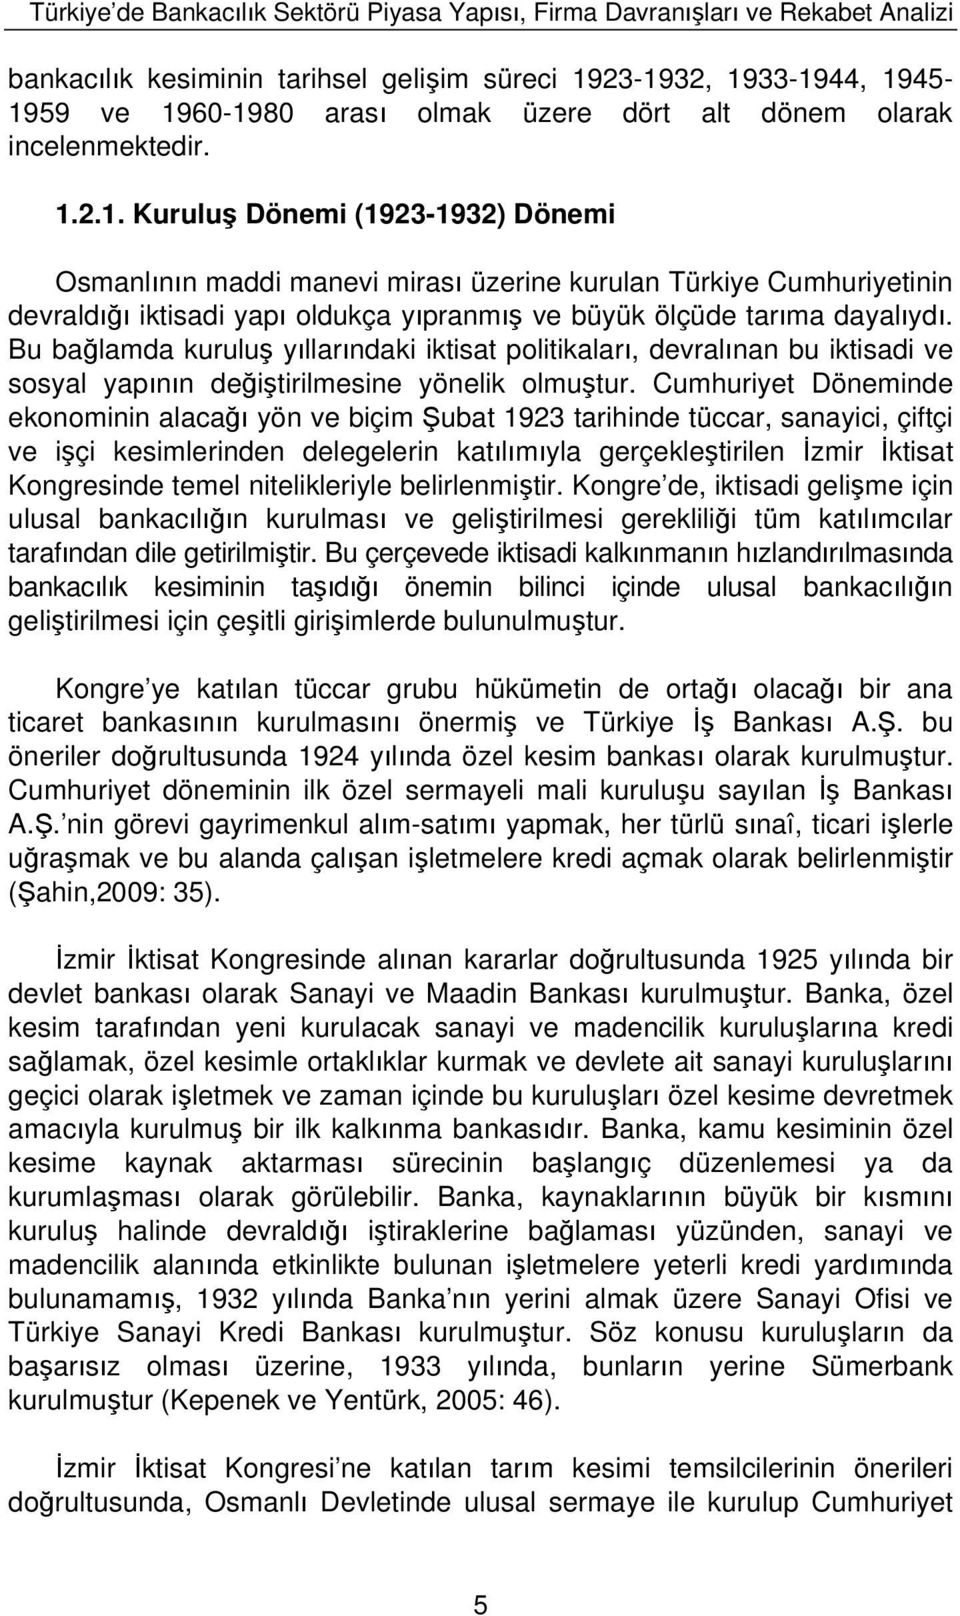 2.1. Kurulu Dönemi (1923-1932) Dönemi Osmanl n n maddi manevi miras üzerine kurulan Türkiye Cumhuriyetinin devrald iktisadi yap oldukça y pranm ve büyük ölçüde tar ma dayal yd.